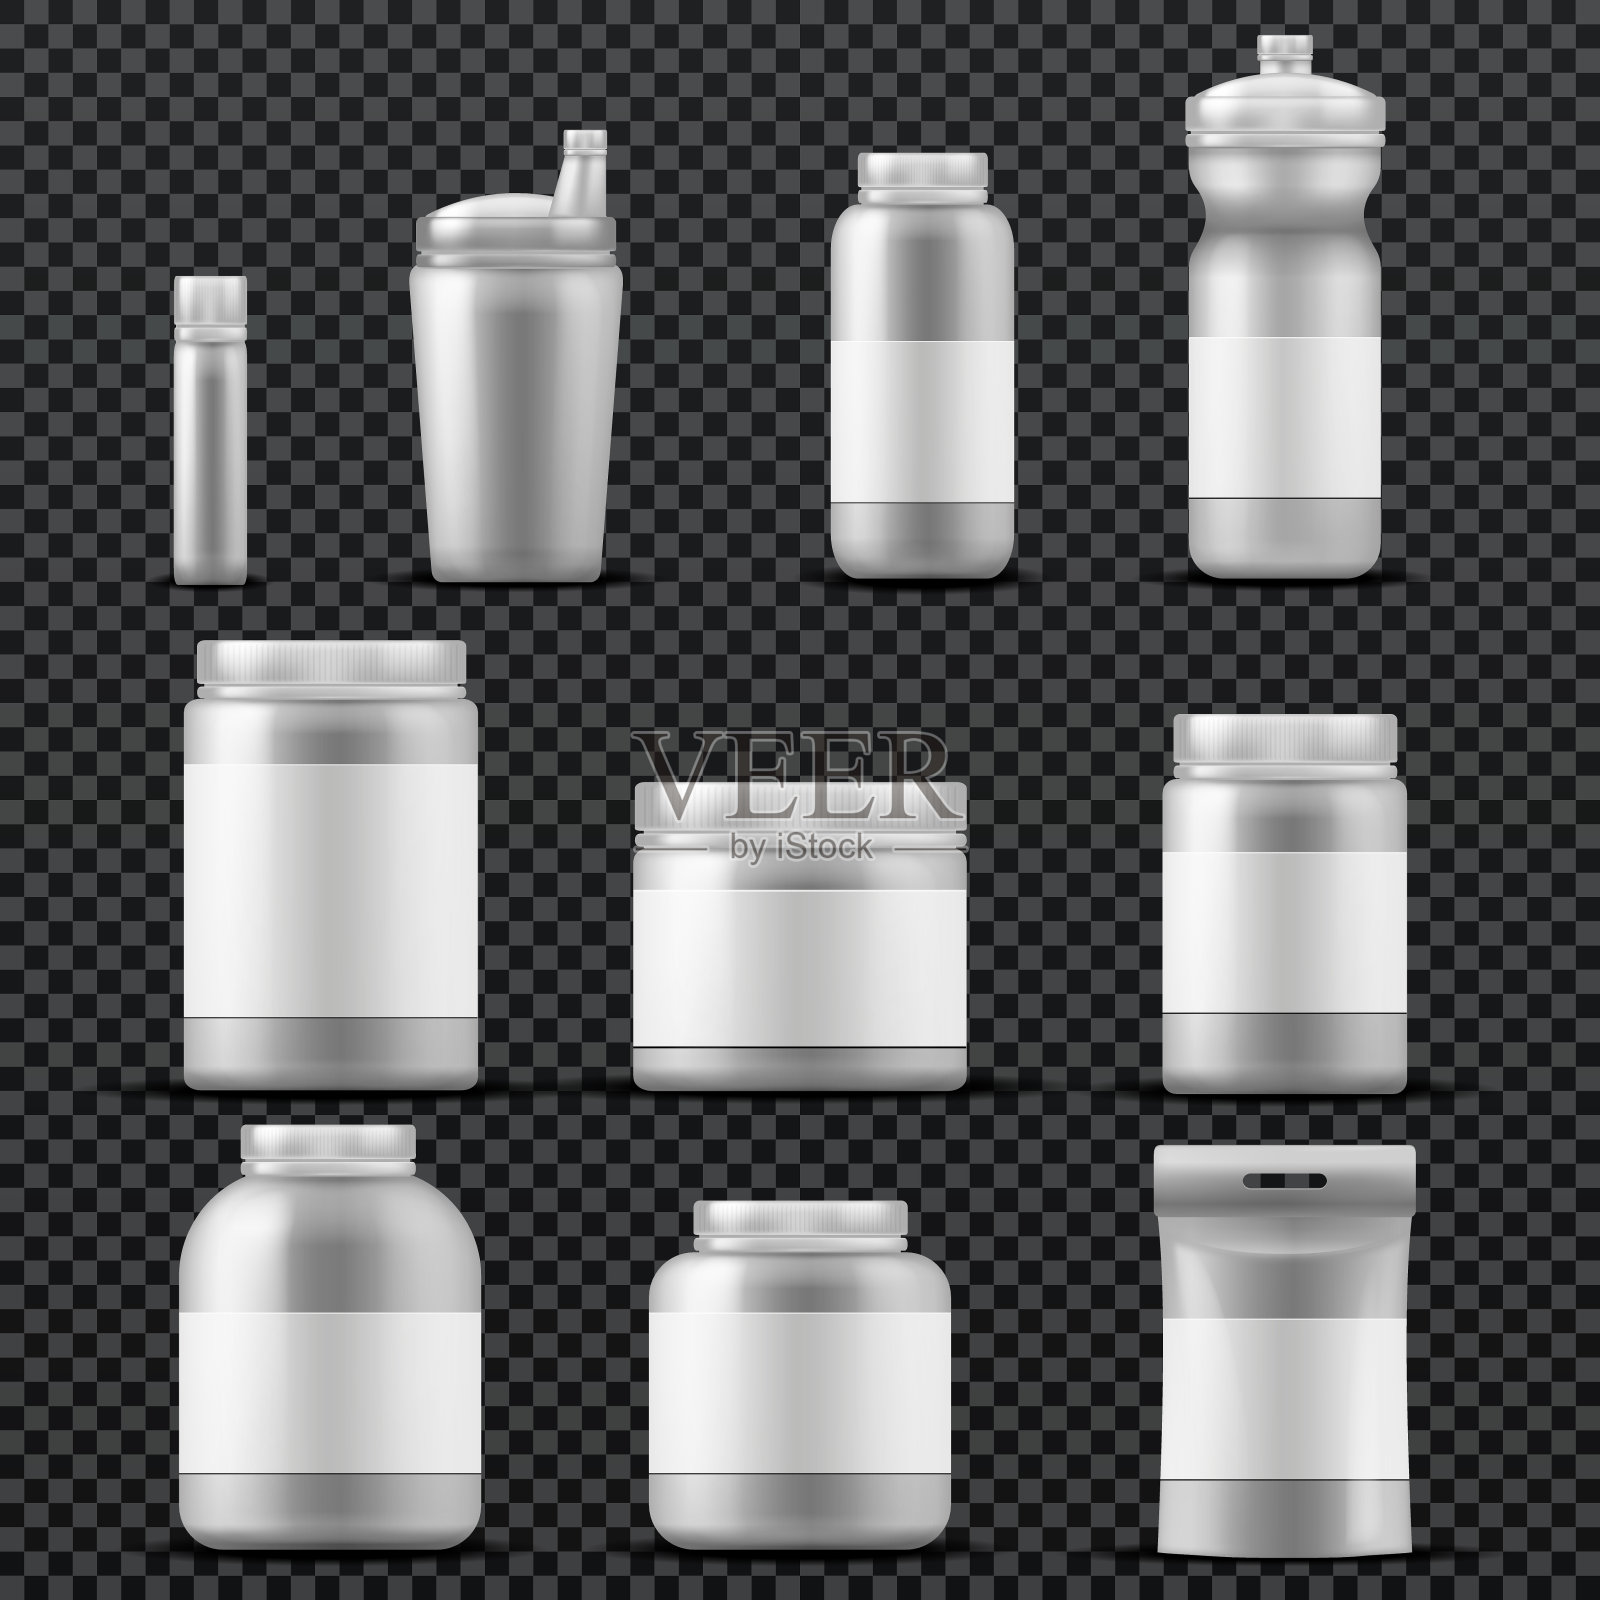 运动补充塑料罐容器的饮料和粉末。向量模板隔离插画图片素材